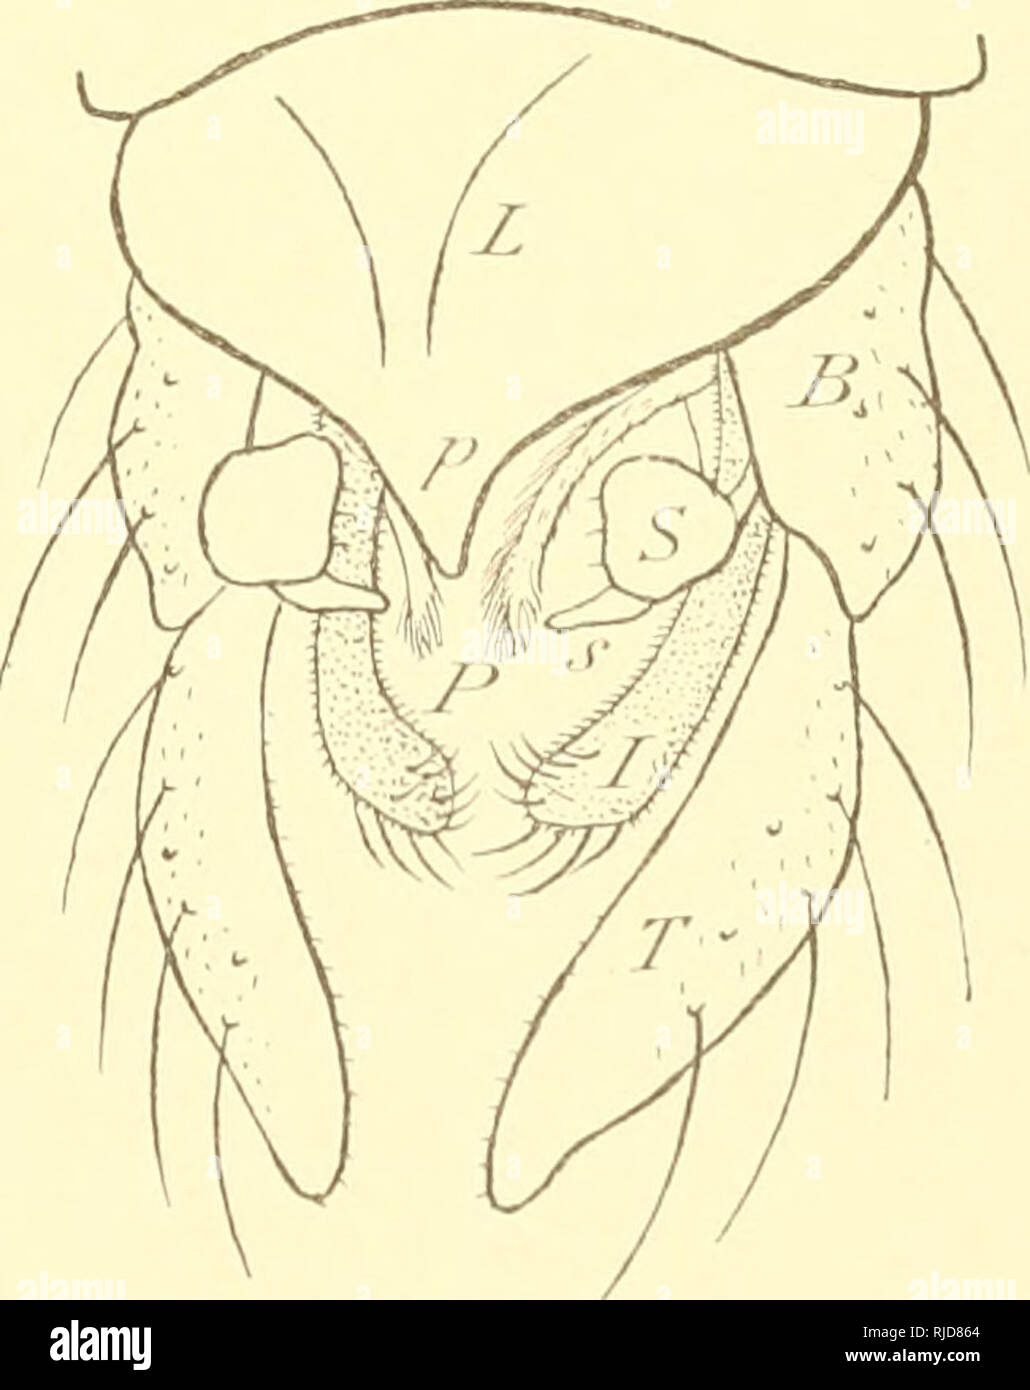 . Ceratopogoninae de Belgique. Diptera; Ceratopogonidae. CHIRONOMIDKS DE BEIXilOUE. 57 5. Pulvilles grands et larges; ailes velues. Q. Psectrotanypus KiEFFER. Piilvilles nuls. 6 6. Ailes velues. Q. Tanypus Meigen (Pelopia Meig.) ('). Ailes nues. 7 7. Radius bifurquÃ©; antennes C'Q de quinze articles; empodiuni absent. G Anatopynia JoHANNSSEN. Radius simple. G. Protanypus KiEFFEK. TABLEAU DES ESPECES. Genre PSECTROTANYPUS Kieffer I. Ailes offrant des bandes et des taches grisÃ¢tres ne dÃ©passant guÃ¨re le bord postÃ©rieur tlu sixiÃ¨me segment abdominal ; cubitus longuement dÃ©passÃ© par la nerv Stock Photo